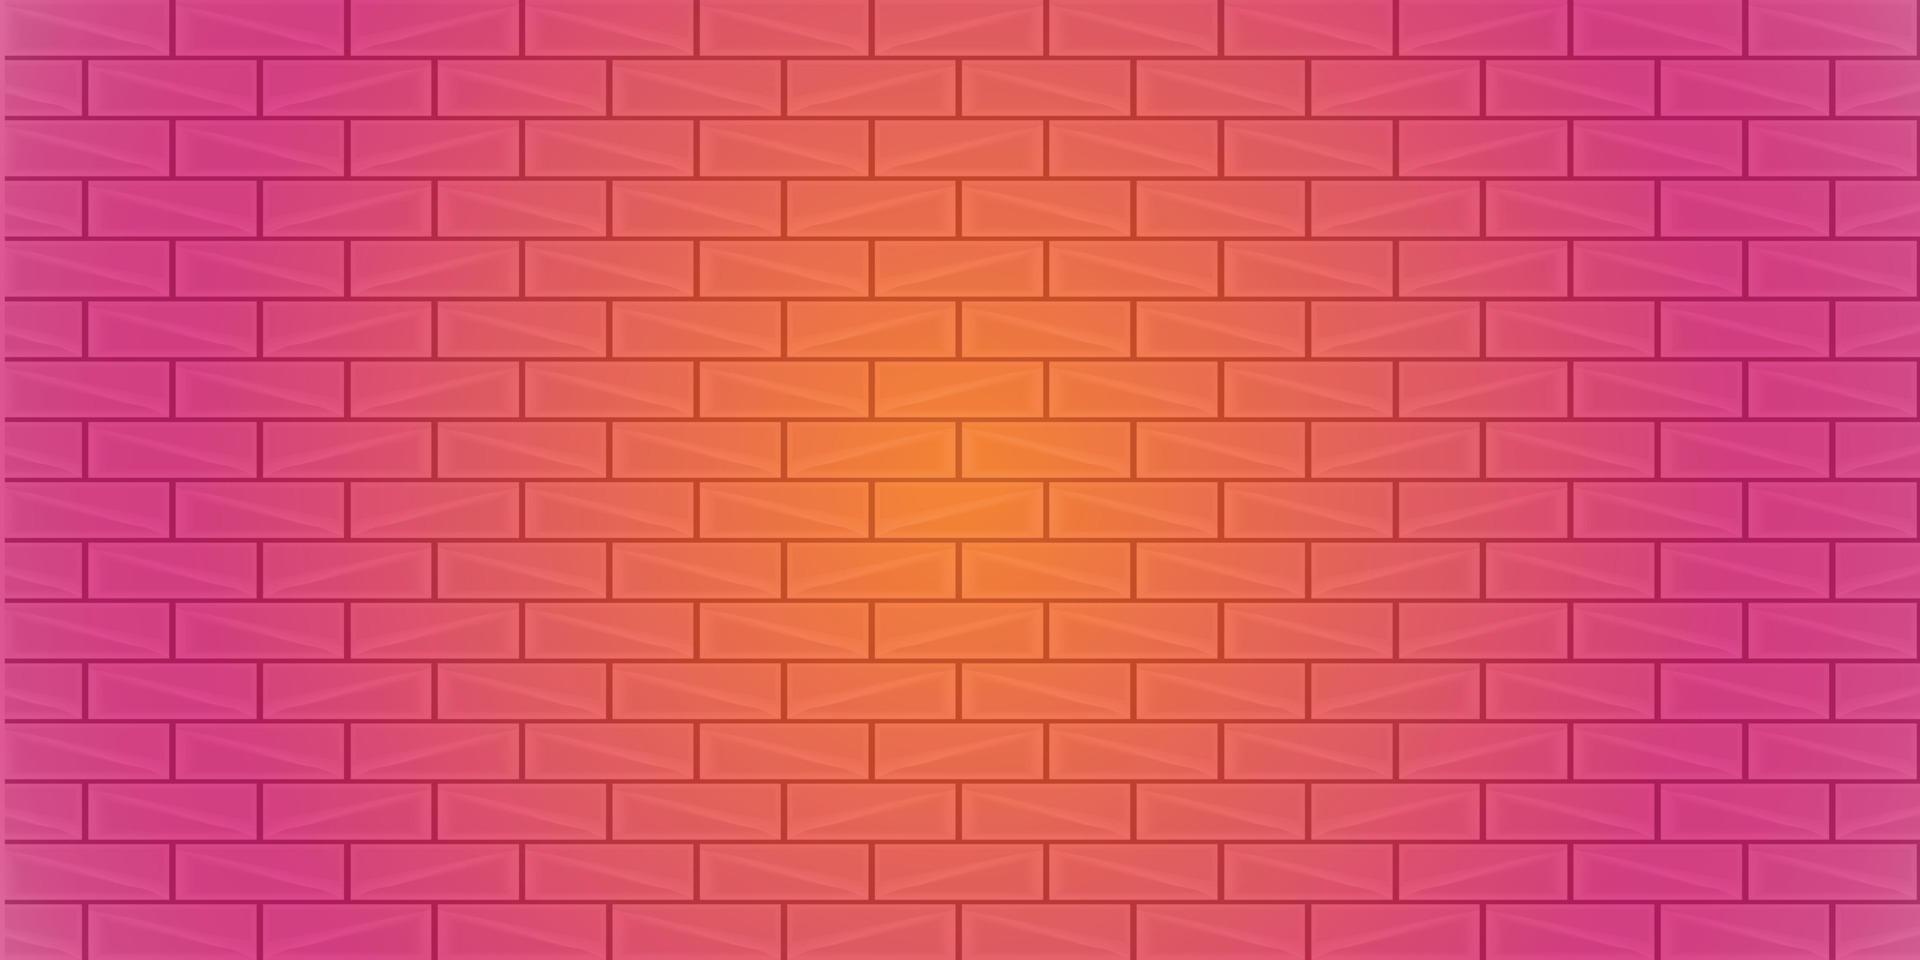 olá temporada celebração fundos abstratos parede de tijolo brilhante textura geométrica papel de parede tecnologia ilustração vetorial eps10 09172021 vetor